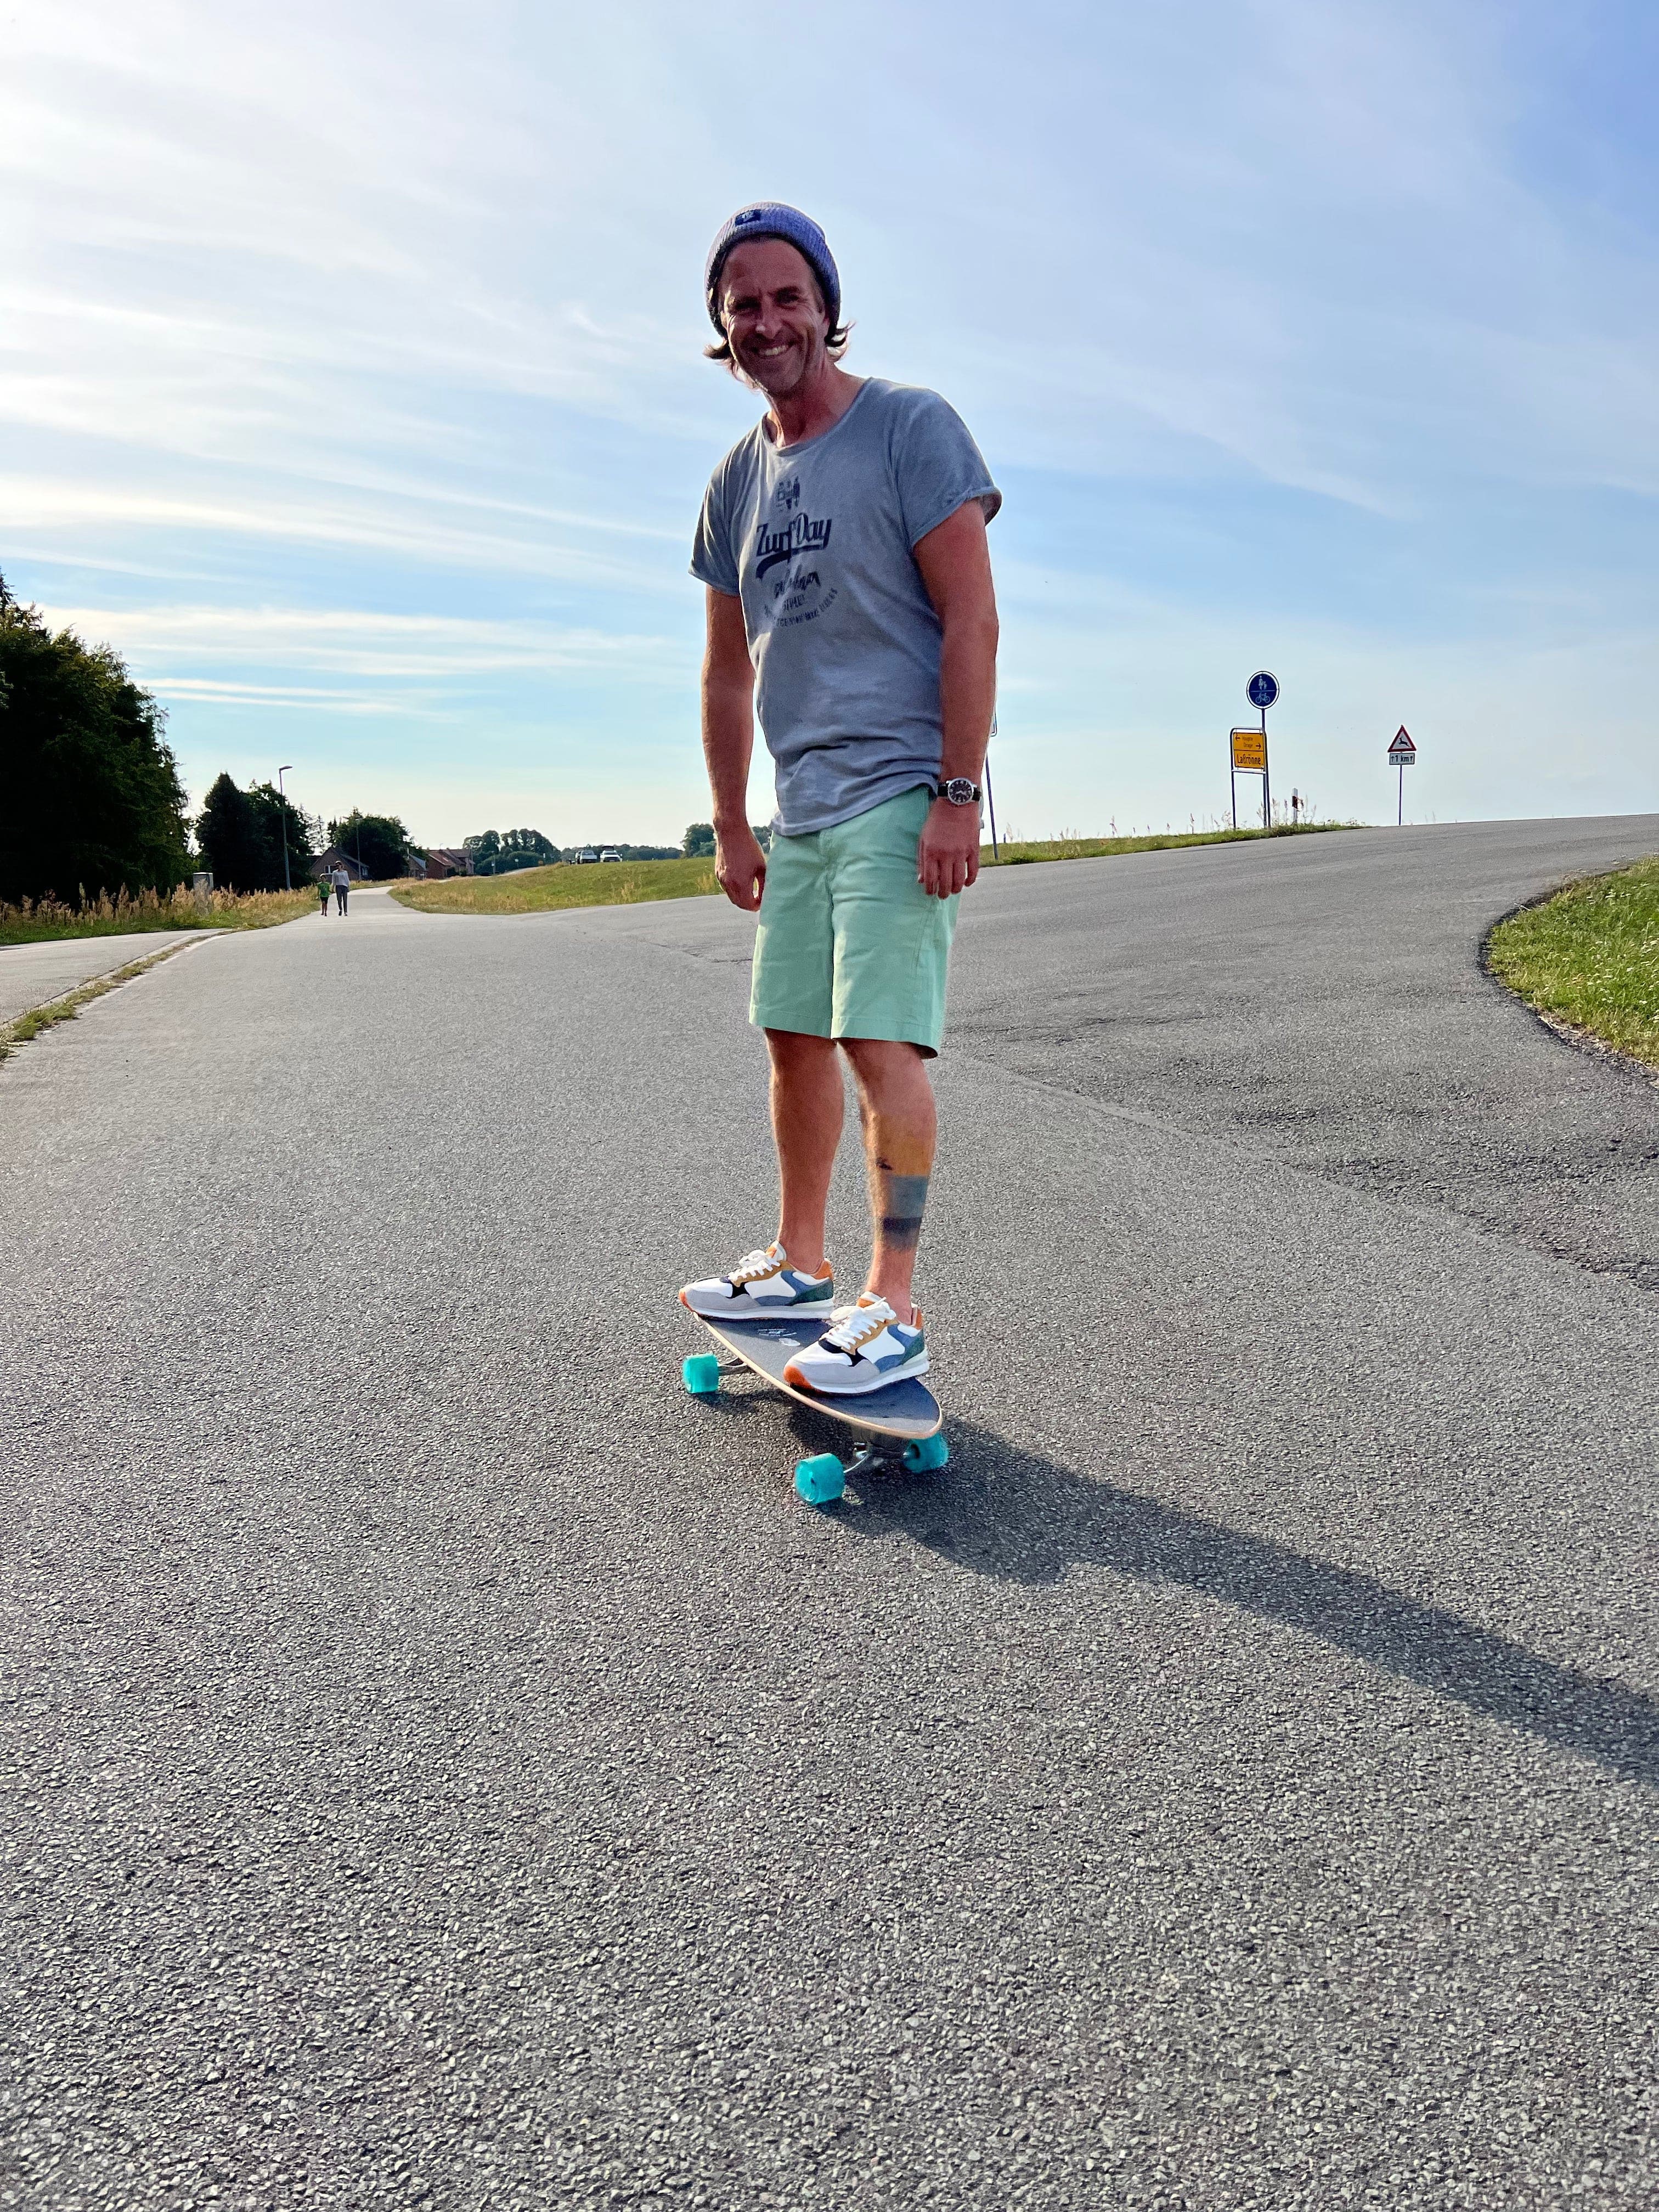 Jui mit Zurfday-Klamotten auf dem Skateboard.